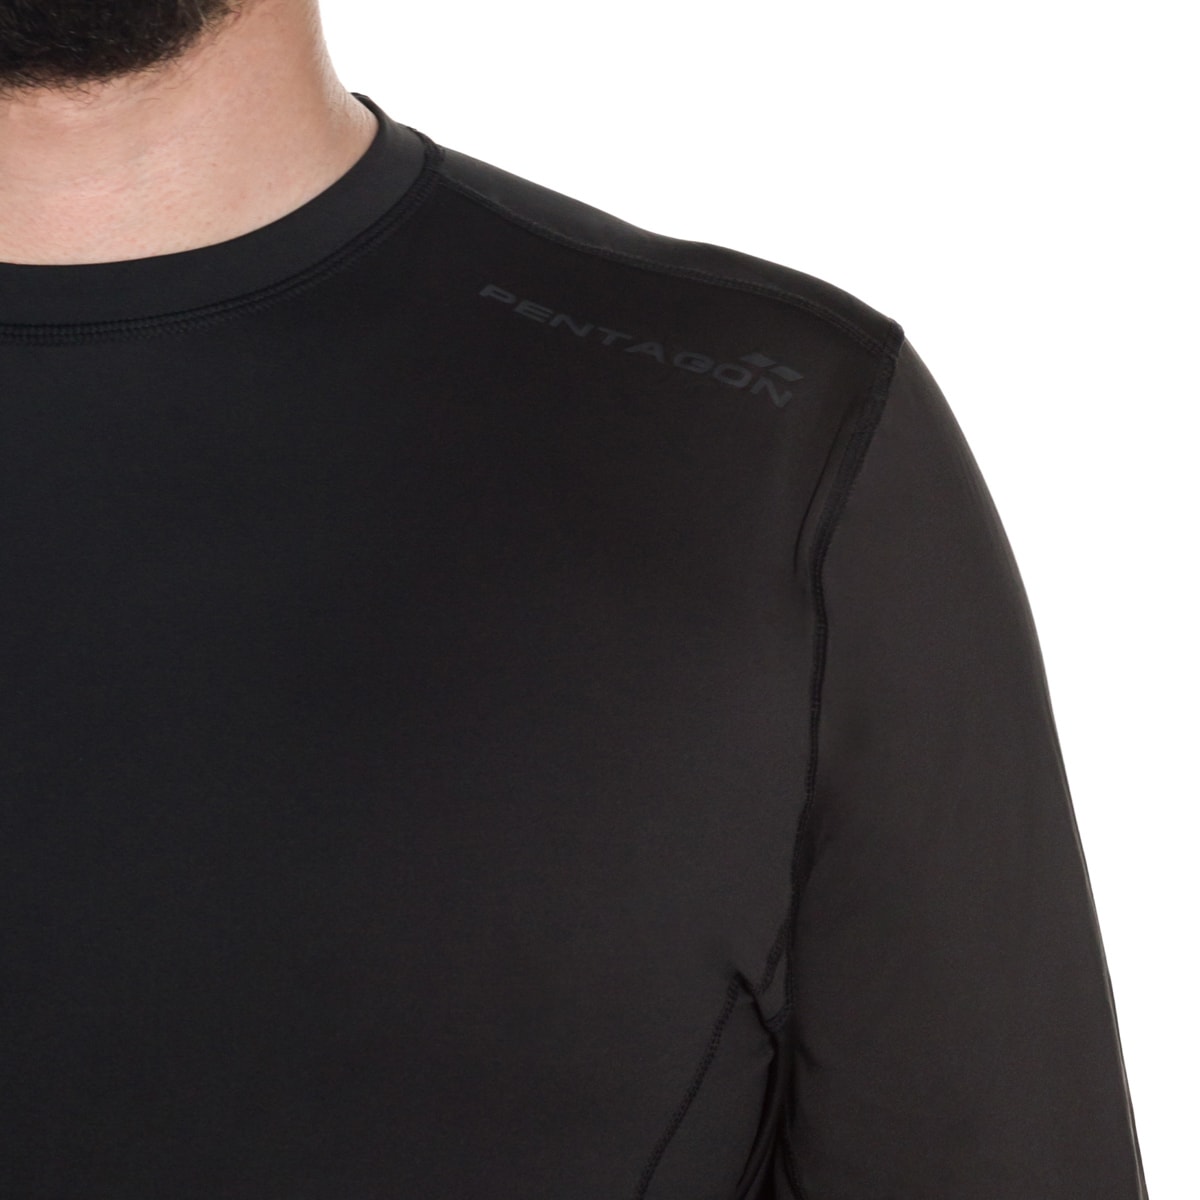 Koszulka termoaktywna Pentagon Pindos 2.0 - Black